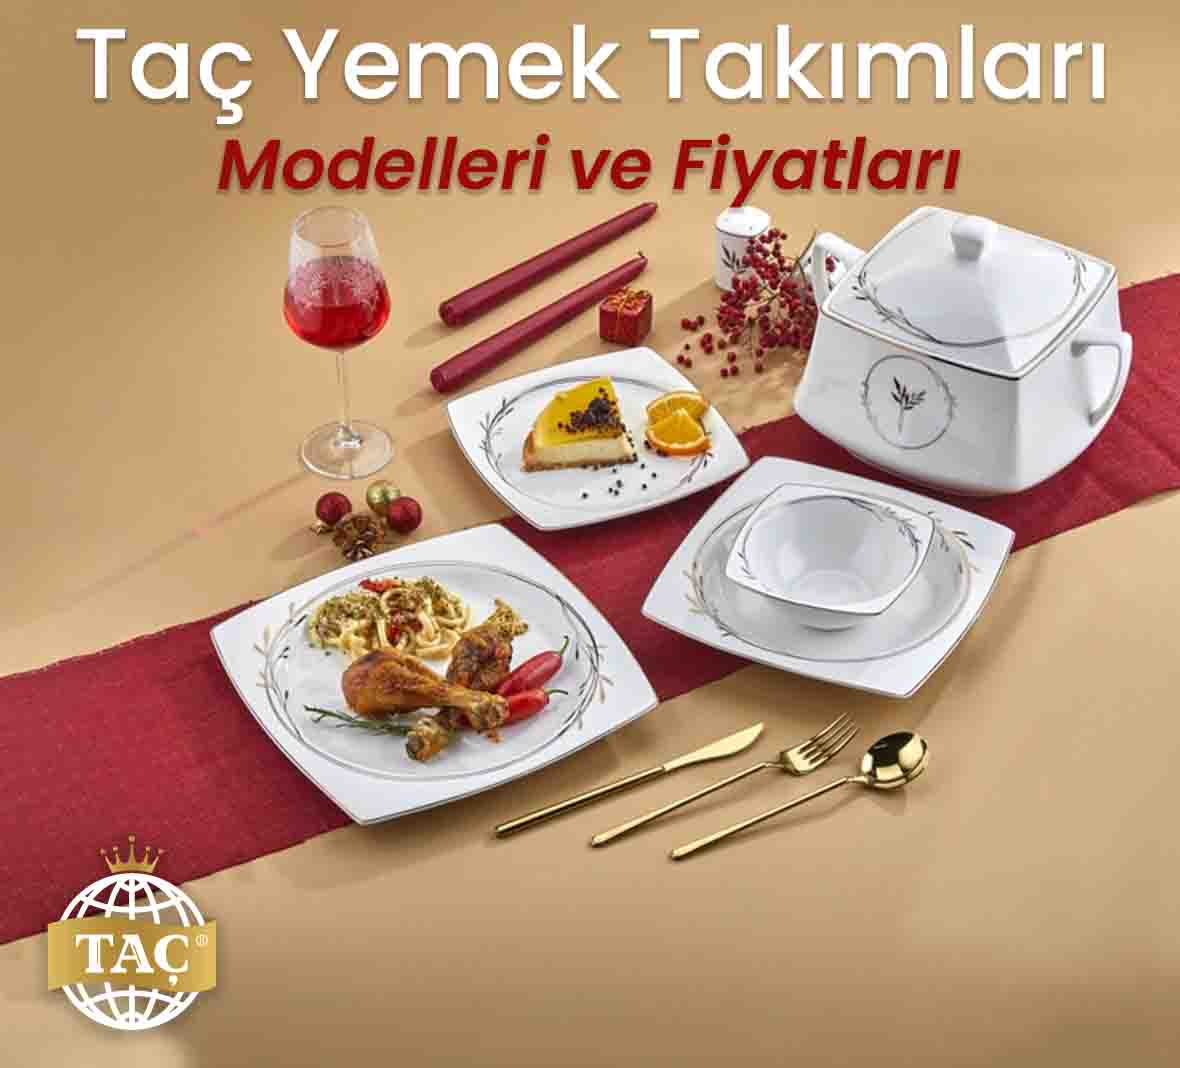 Taç Yemek Takımları Modelleri ve Fiyatları - Tacev.com